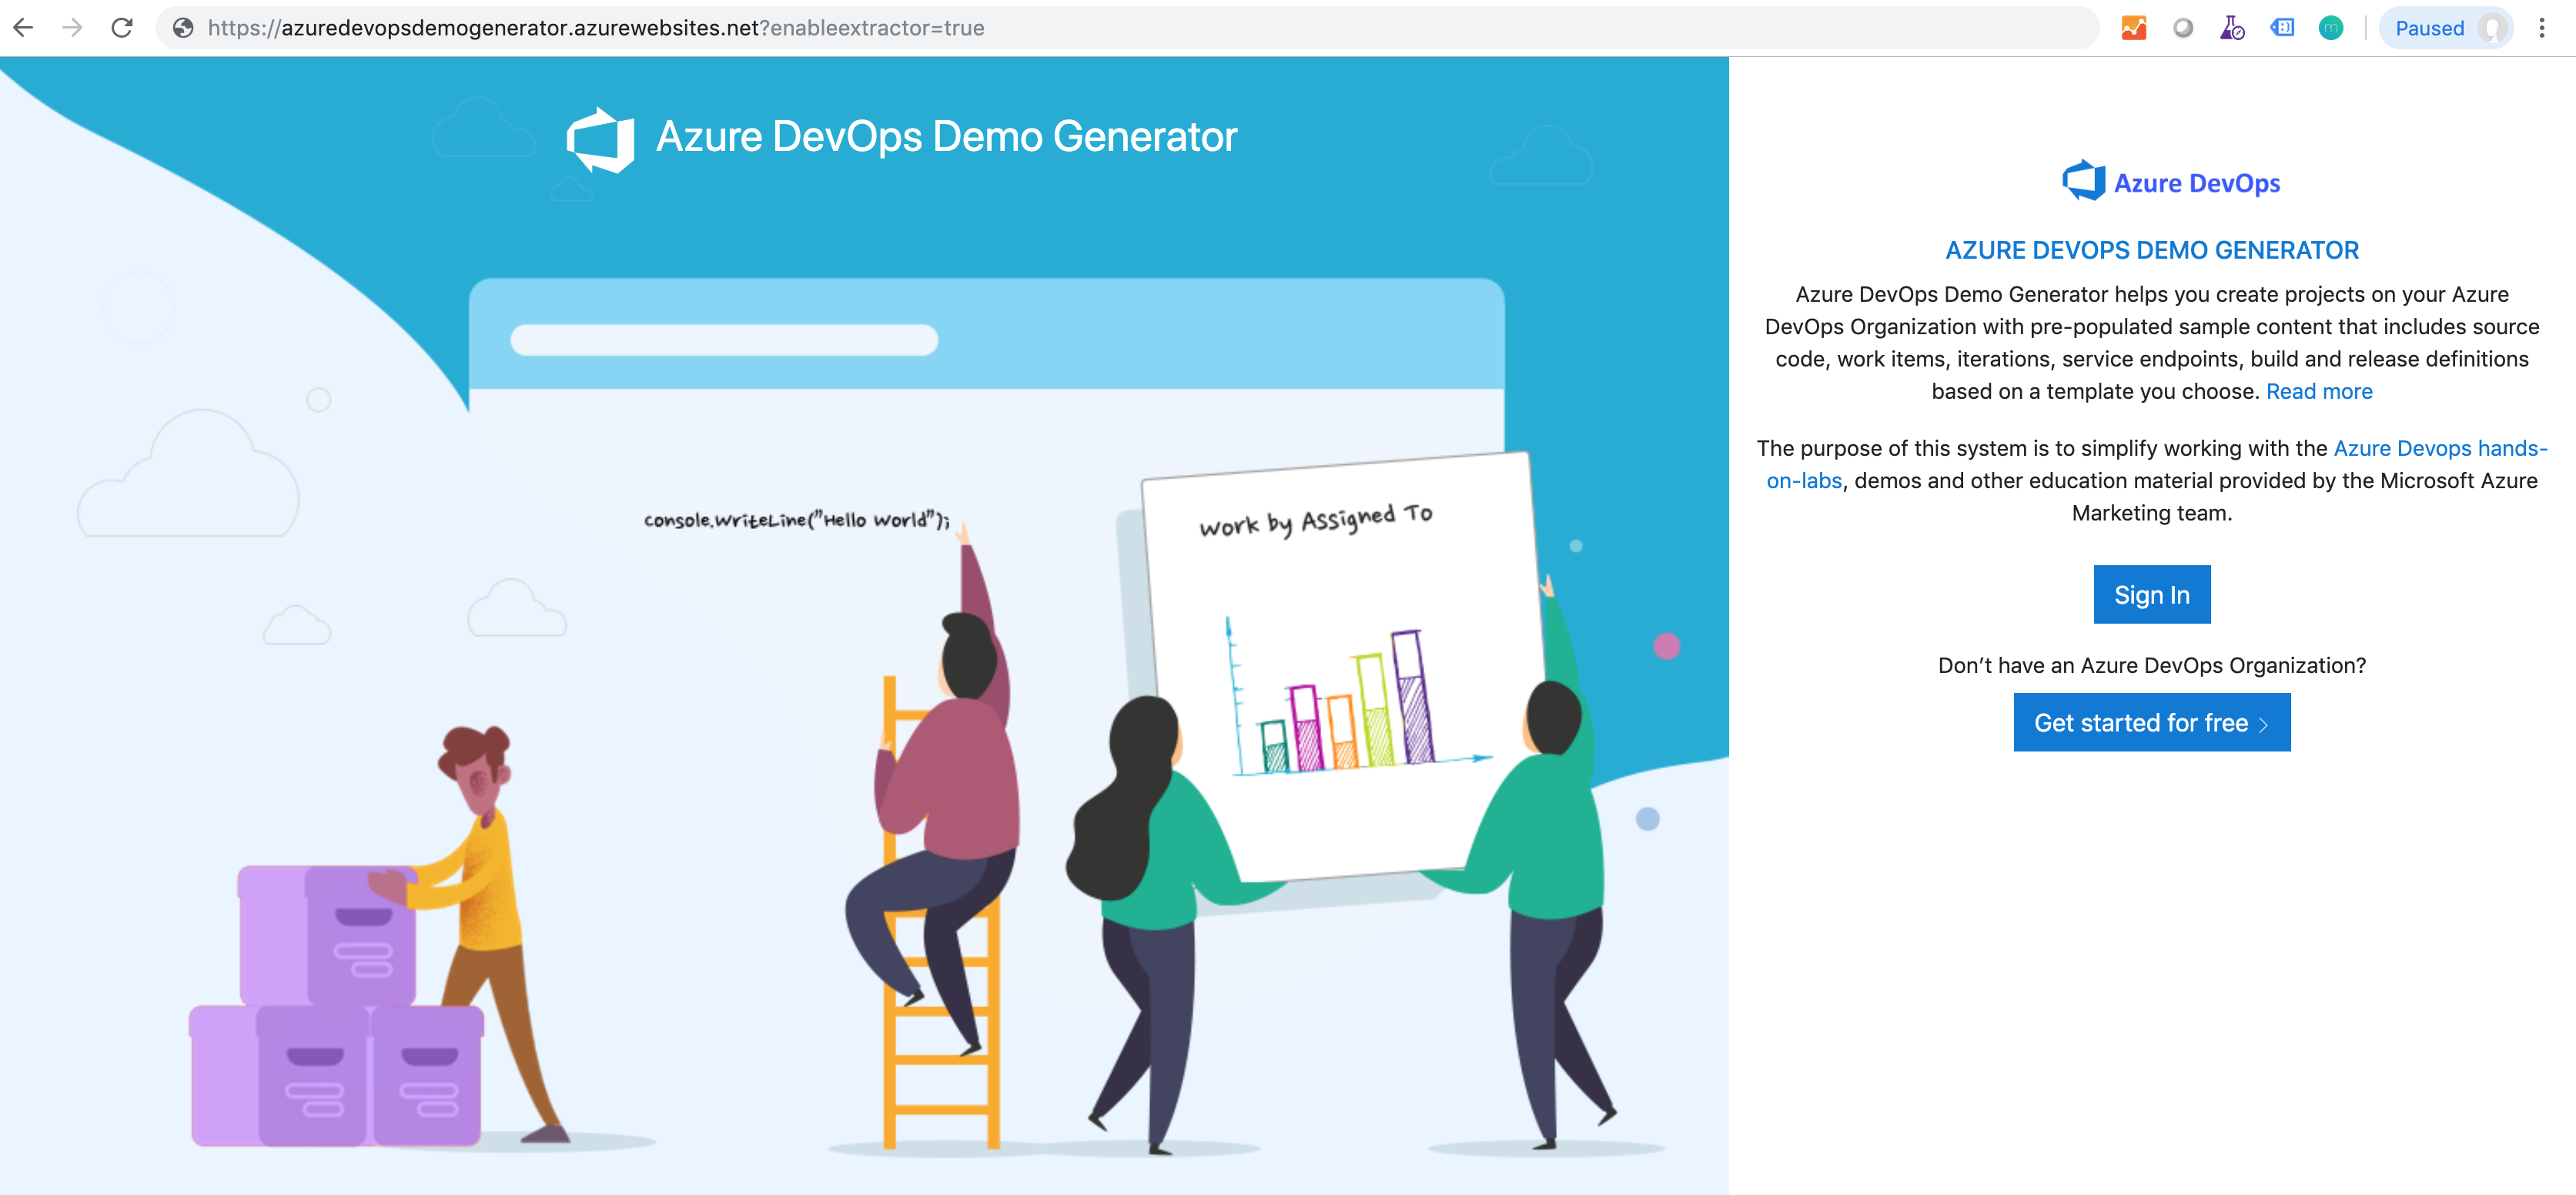 Azure DevOps Demo Generator